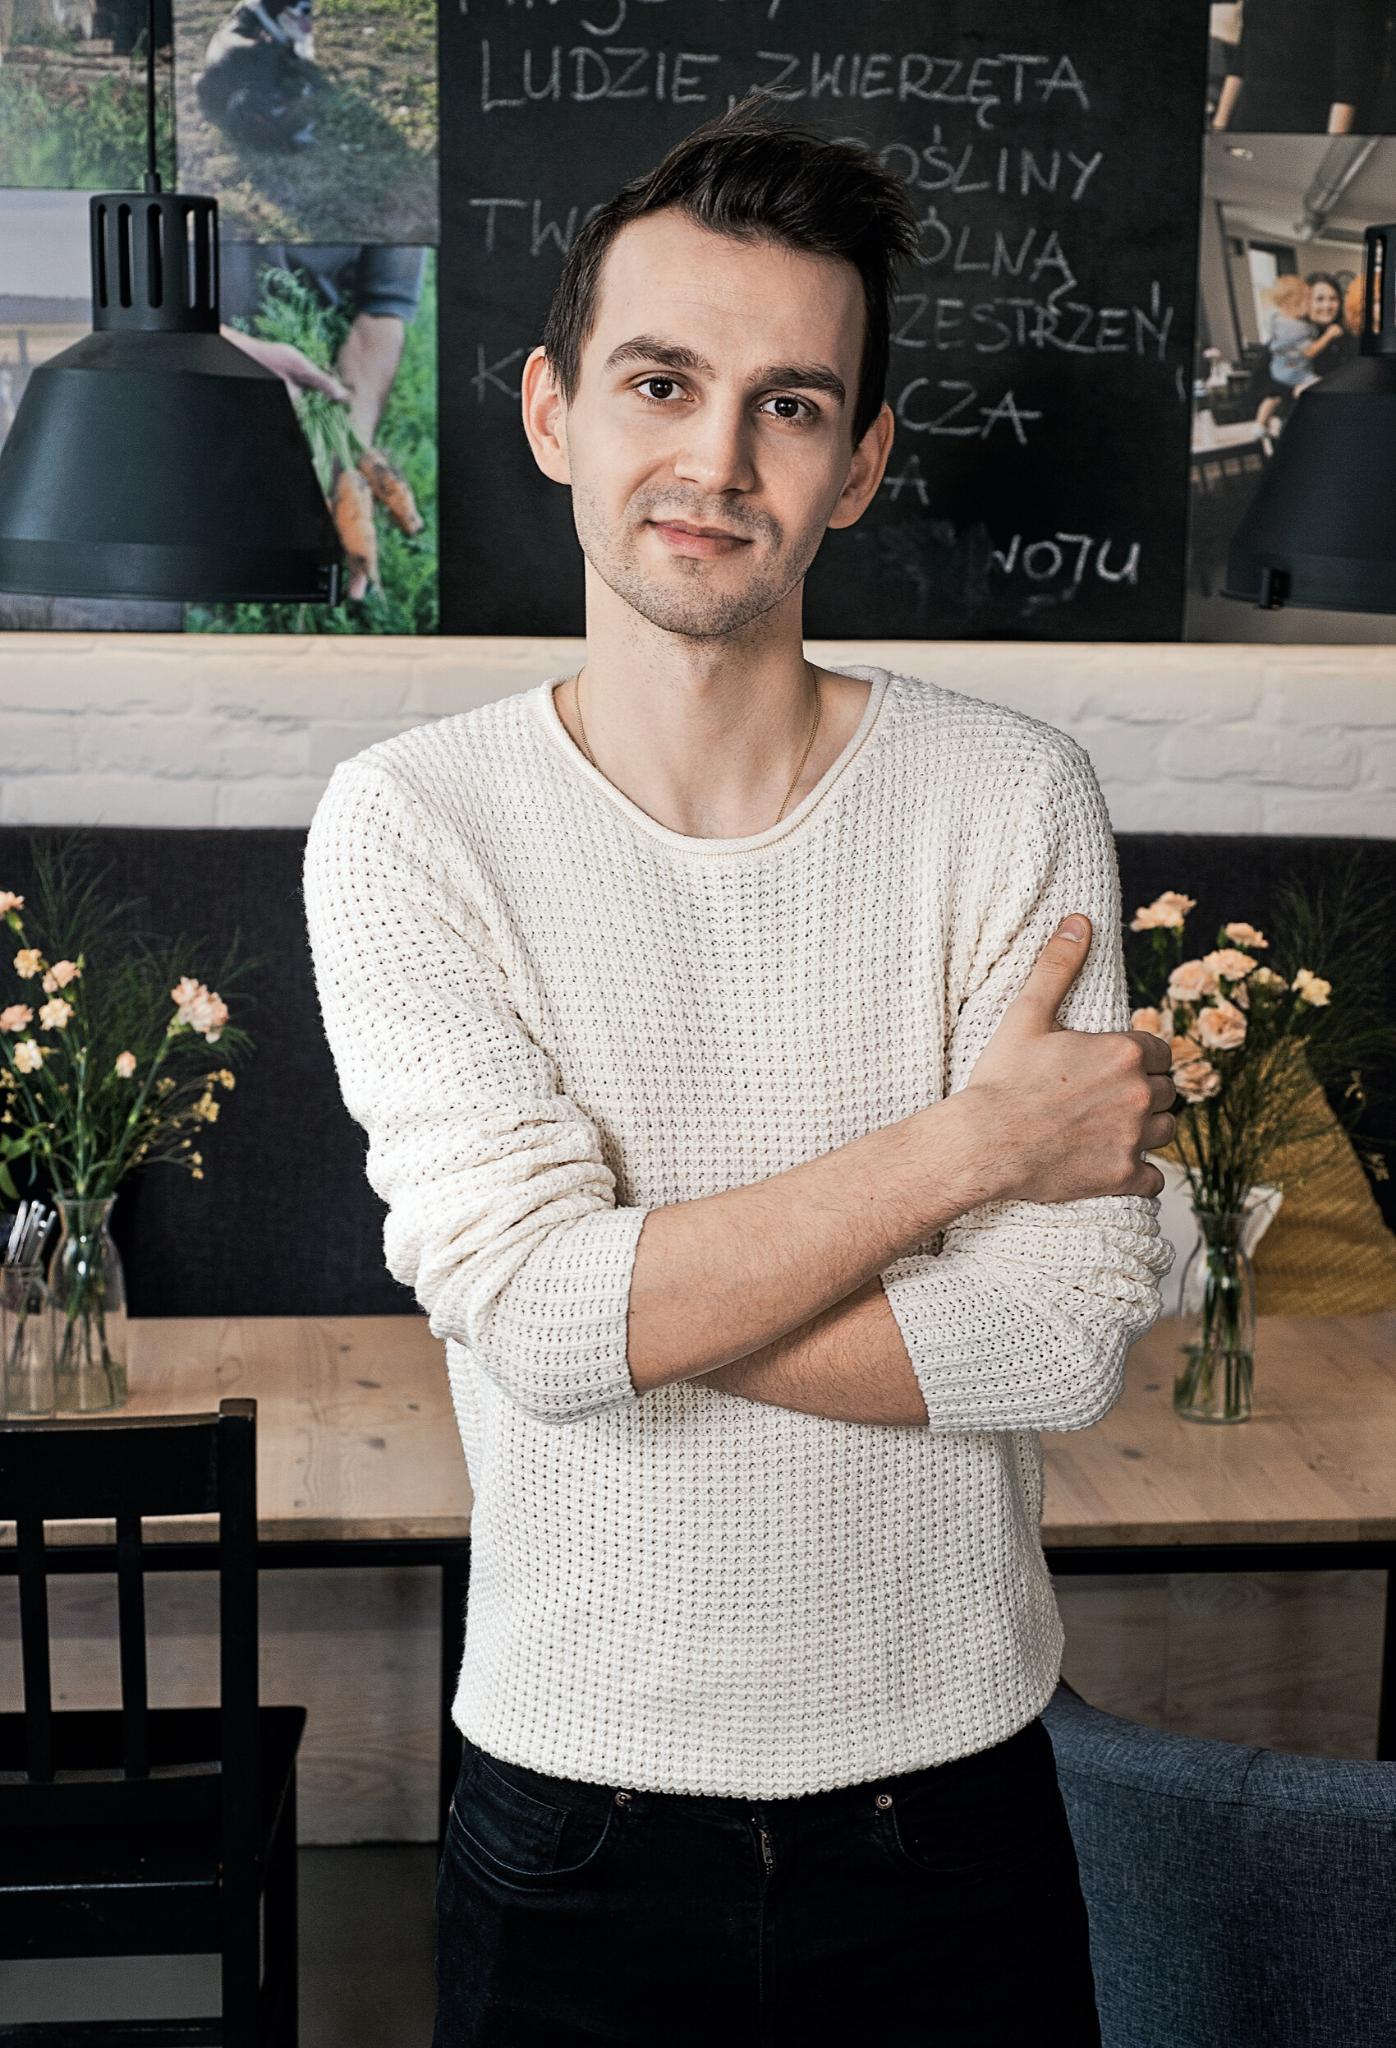  Jacek Ferenc zaczynał jako wolontariusz fundacji Barka, z przyjaciółmi stworzył restaurację Wspólny Stół w Poznaniu, dającą pracę ludziom na zakręcie. (Fot. Albert Zawada)